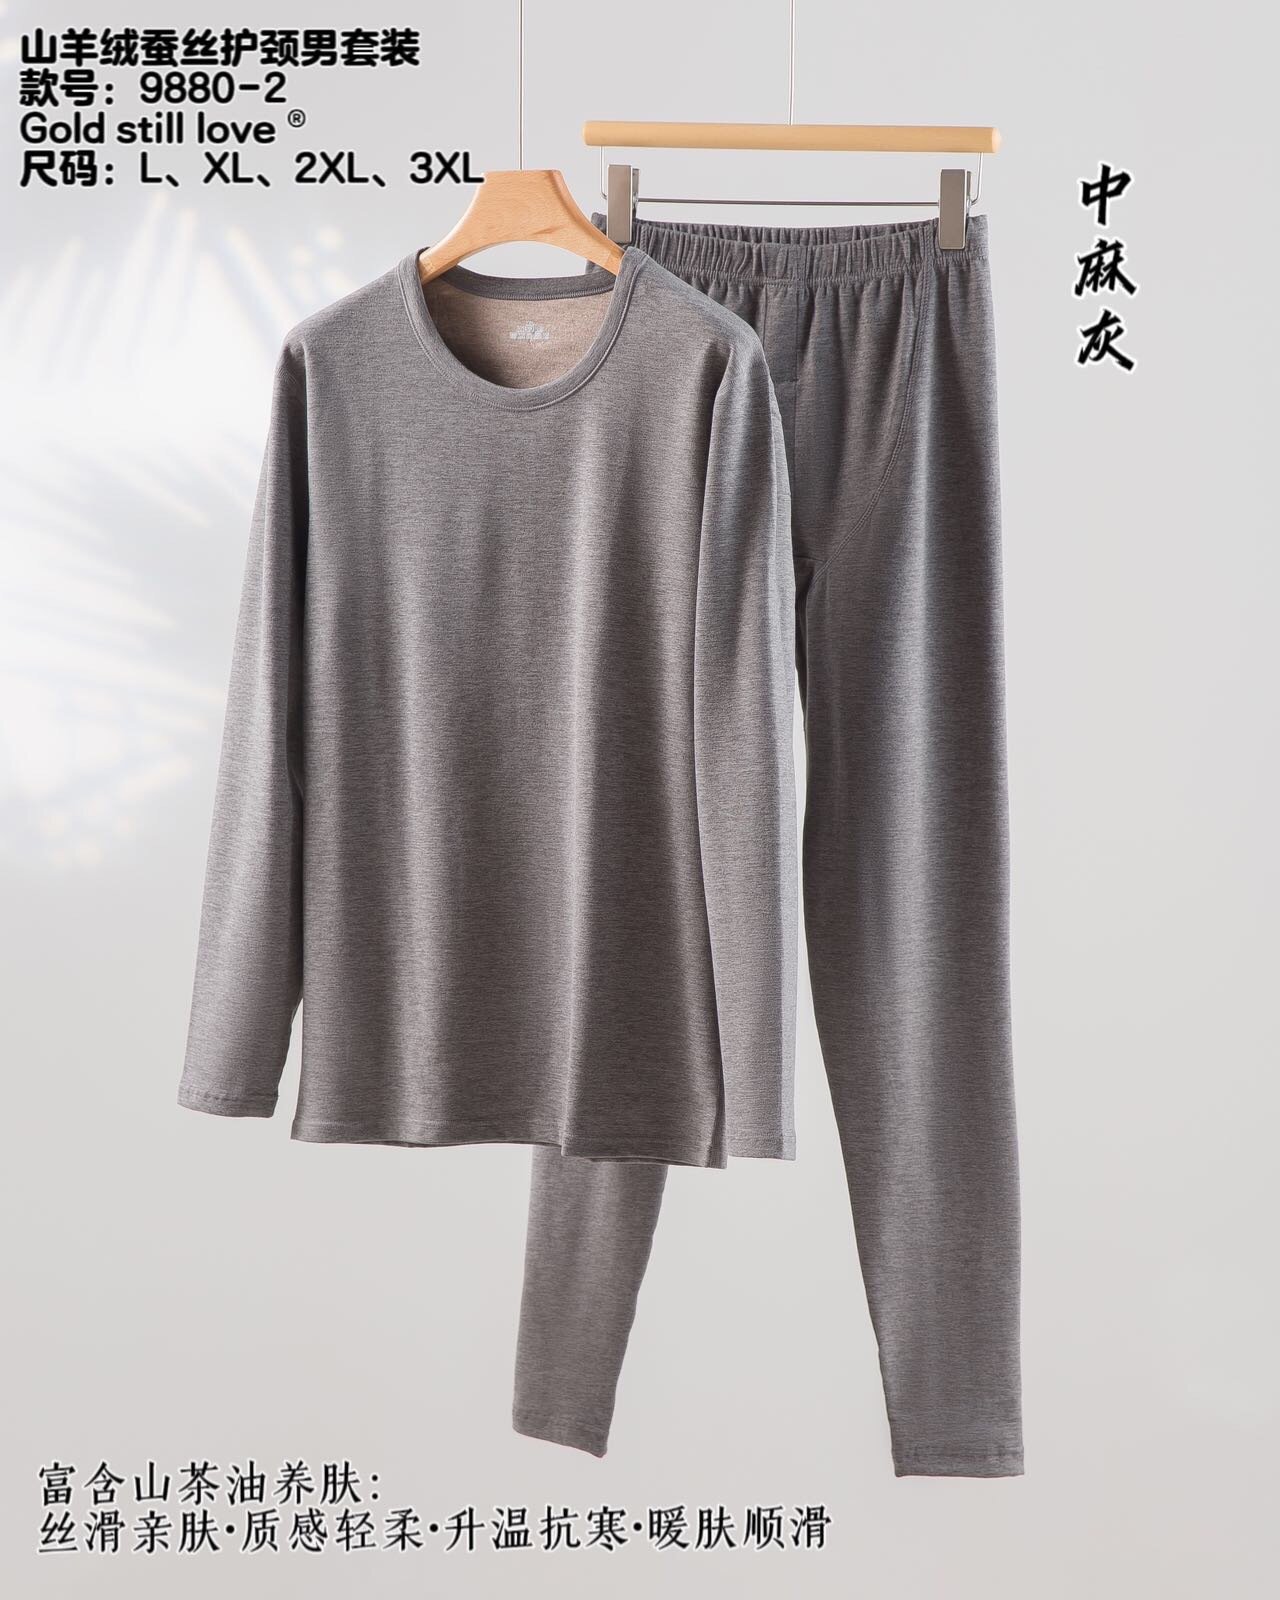 Jinshangai 9880-2 Carbon Fiber Silk Neck Protection Men's Suit Warm Thin Underwear Slim-Fitting Autumn Clothes Long Johns